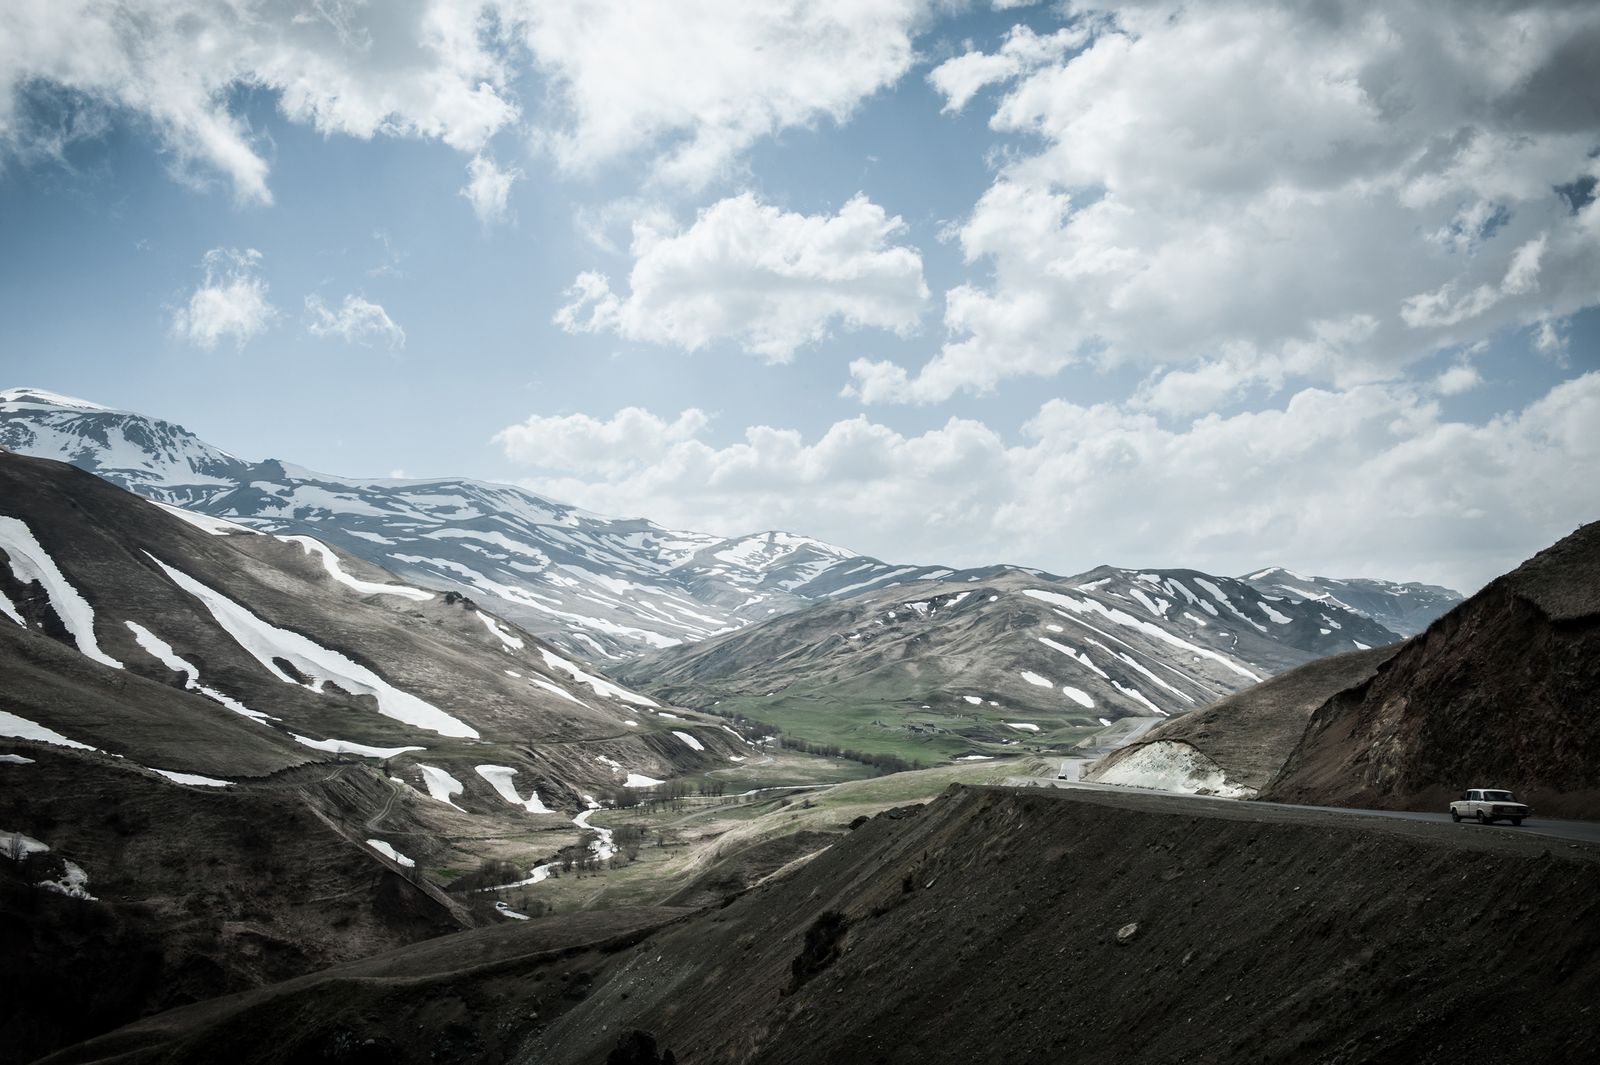 © Mattia Vacca - The mountains at the border between Nagorno-Karabakh and Armenia.